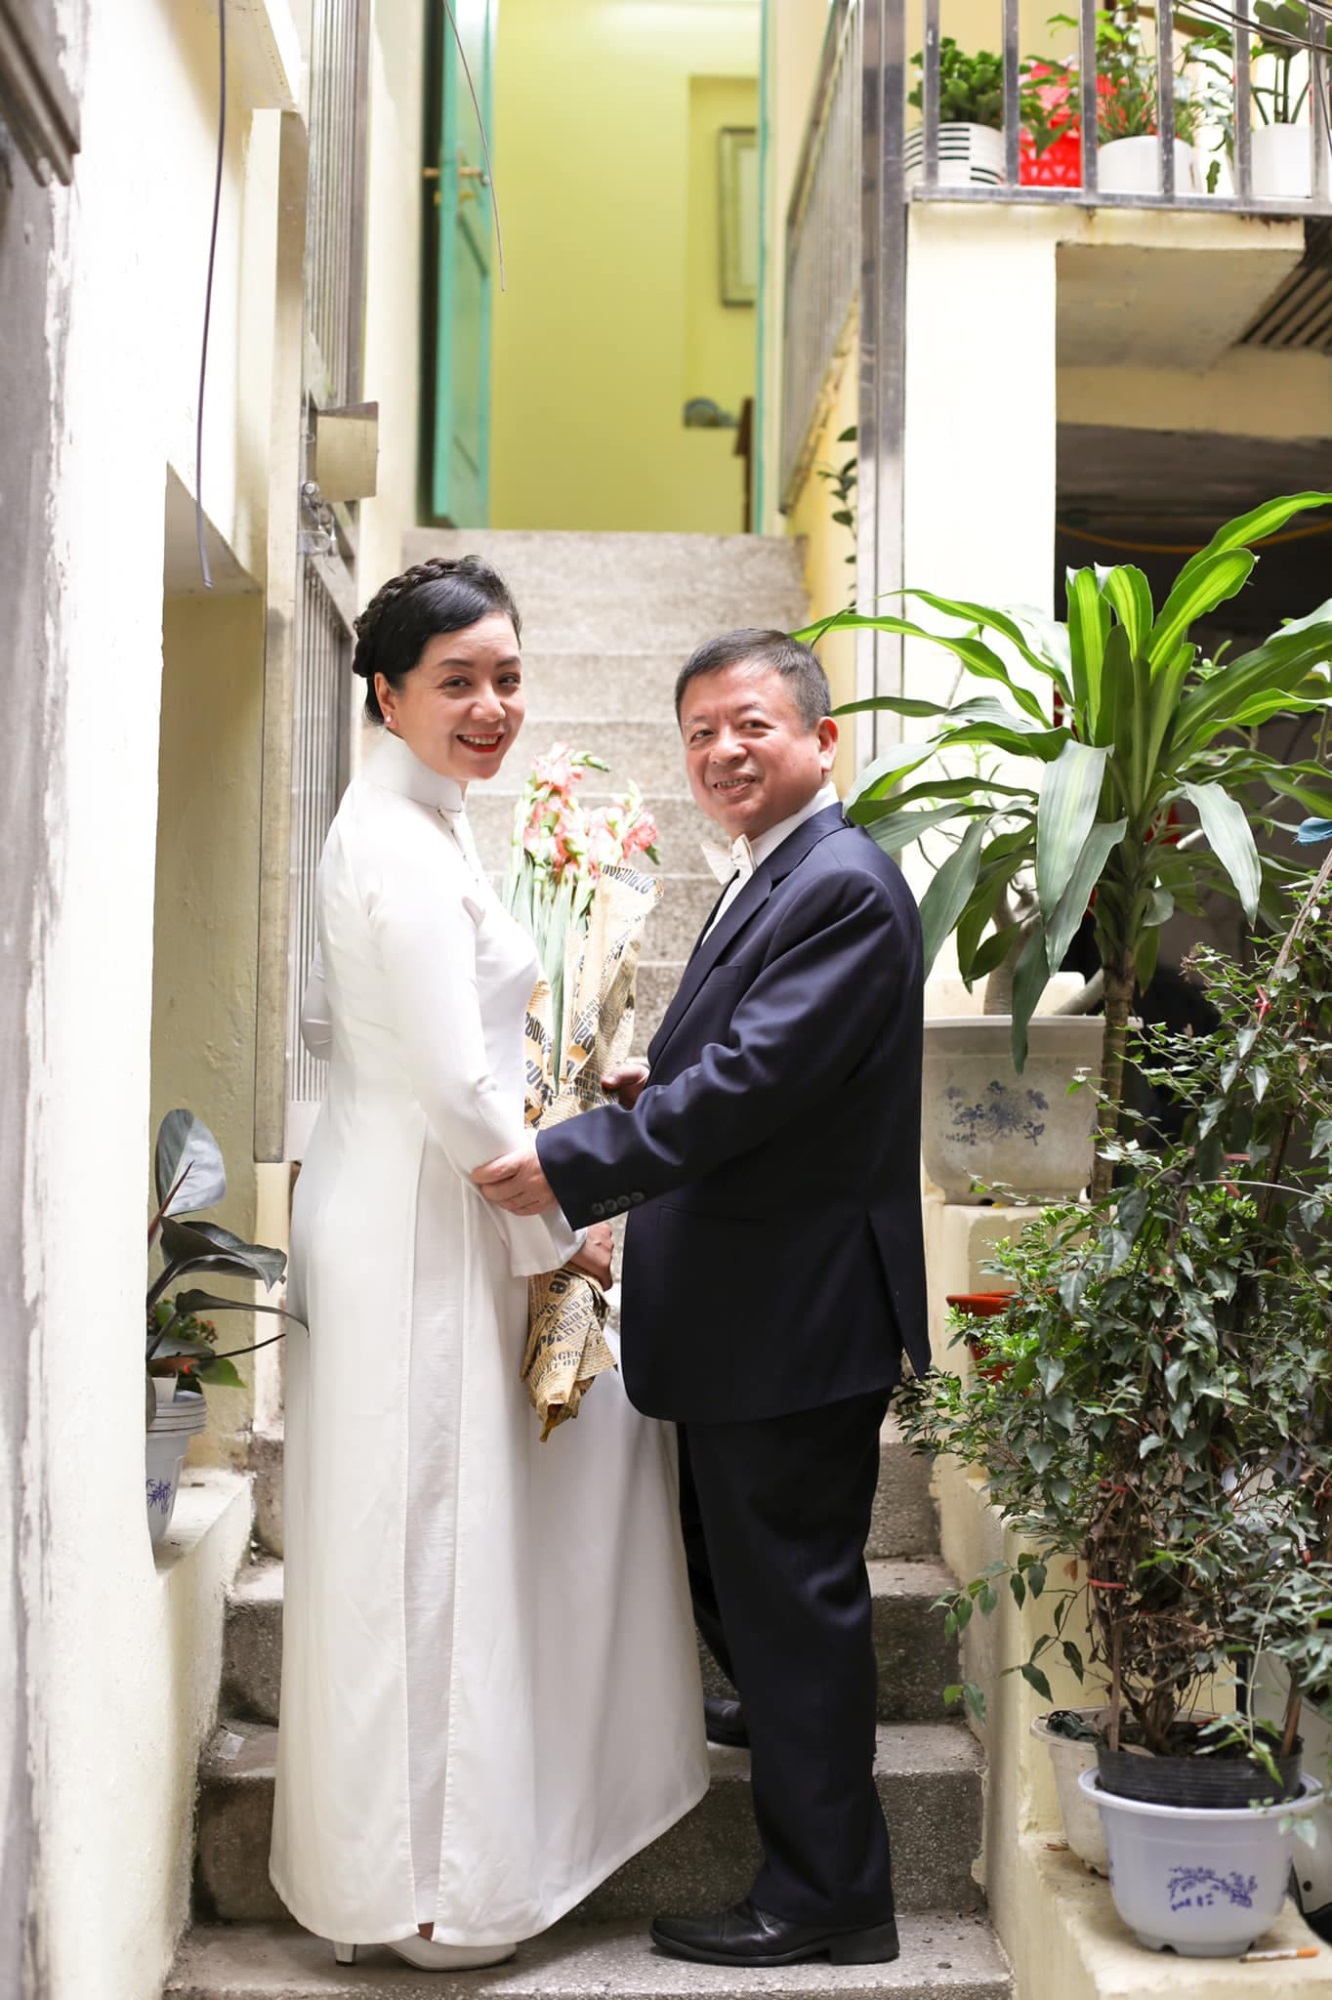 Hôn nhân gần 40 năm của nghệ sĩ Chiều Xuân: Quá viên mãn, không ngại nói lời ngọt ngào, chồng ủng hộ mọi đam mê của vợ - Ảnh 9